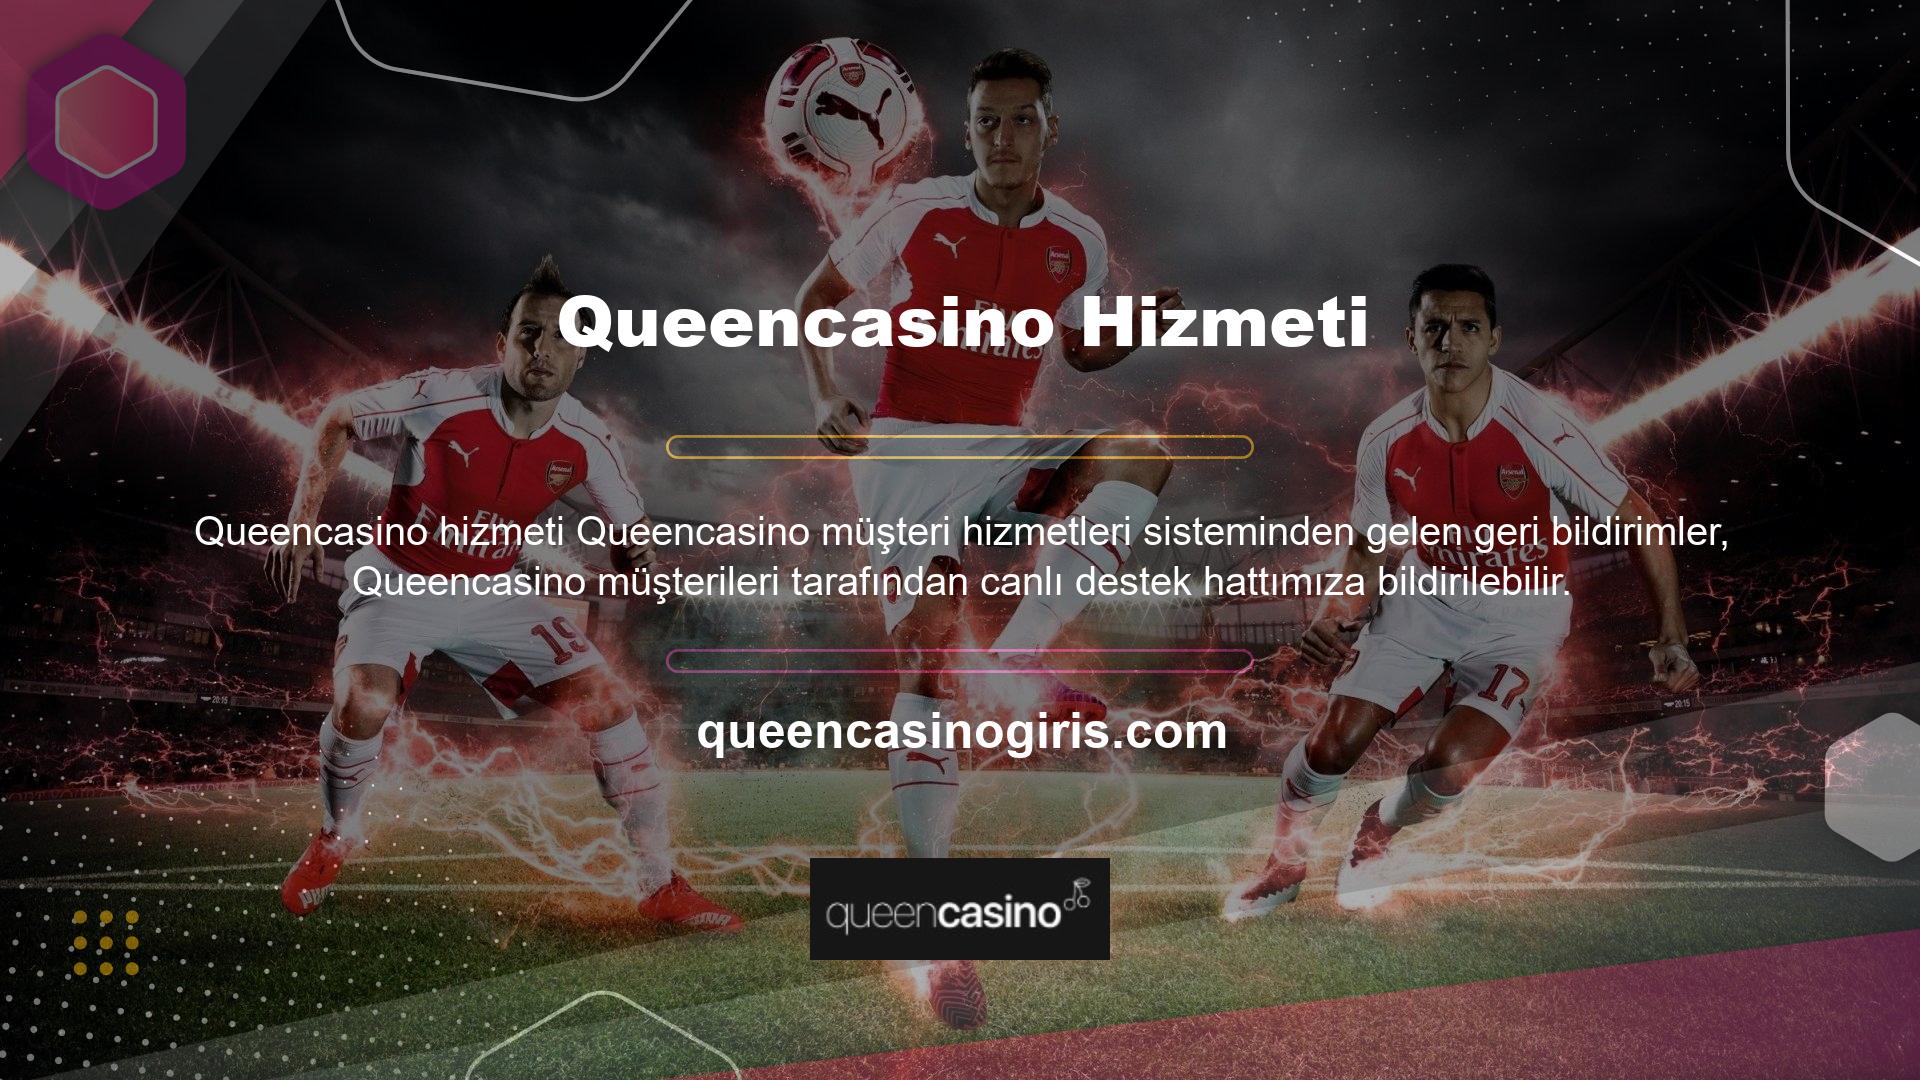 Kullanıcılar Queencasino hizmetlerine ilişkin sorularına canlı destek hattı üzerinden yanıt bulabilirler